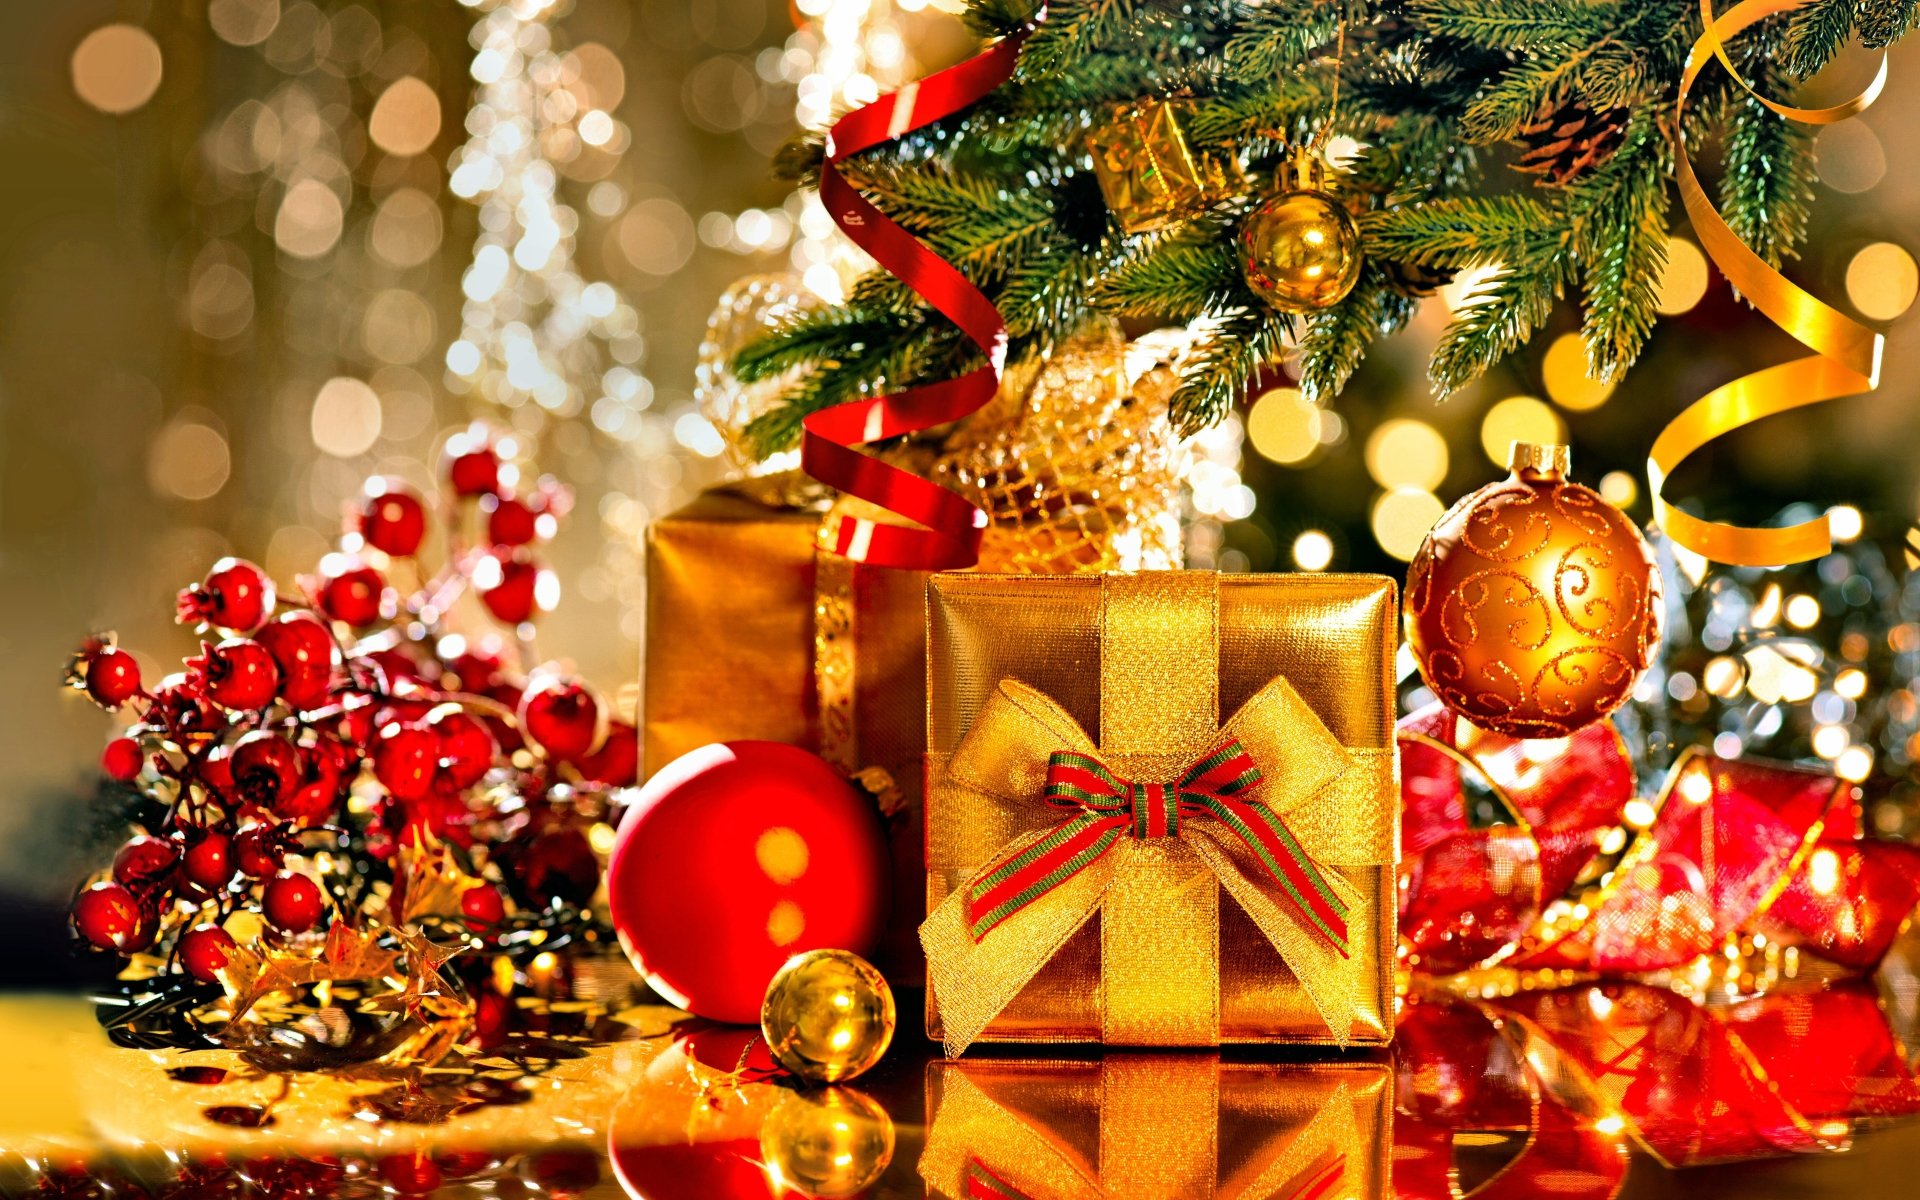 papel de navidad,decoración navideña,decoración navideña,navidad,nochebuena,árbol de navidad